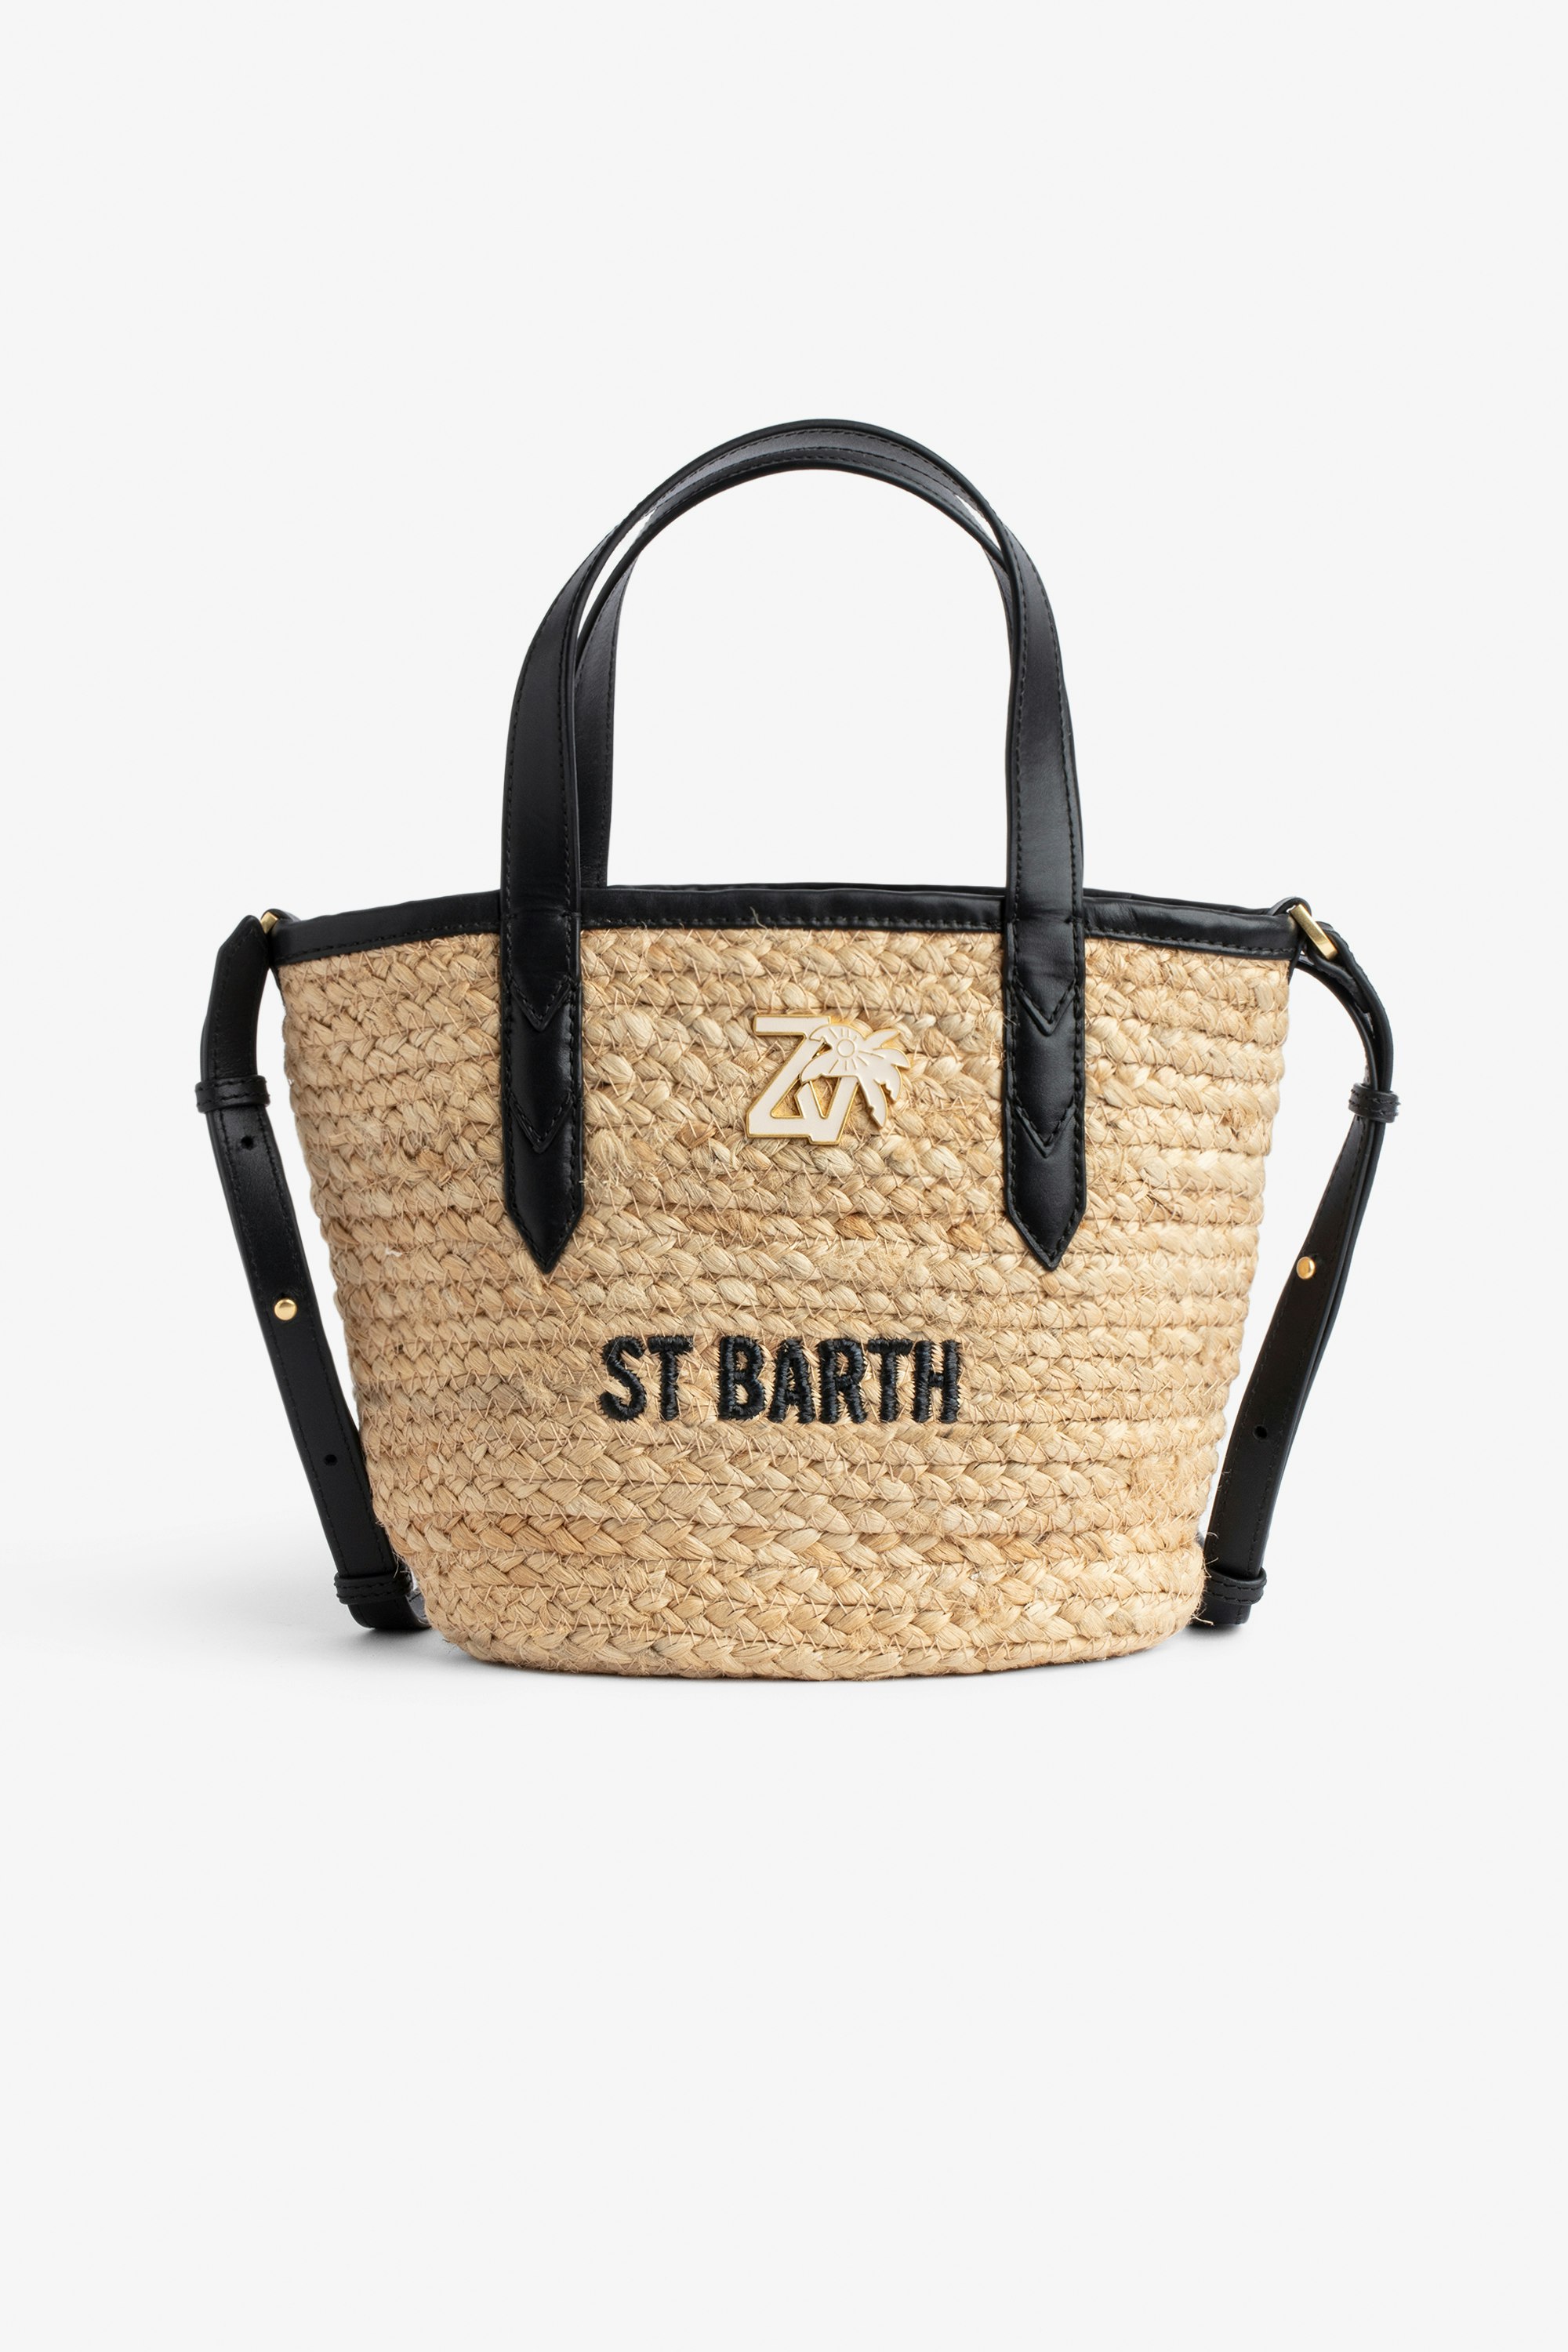 Tasche Le Baby Beach Damen-Strohtasche mit Schulterriemen aus schwarzem Leder, „St Barth“-Stickerei und ZV-Charm